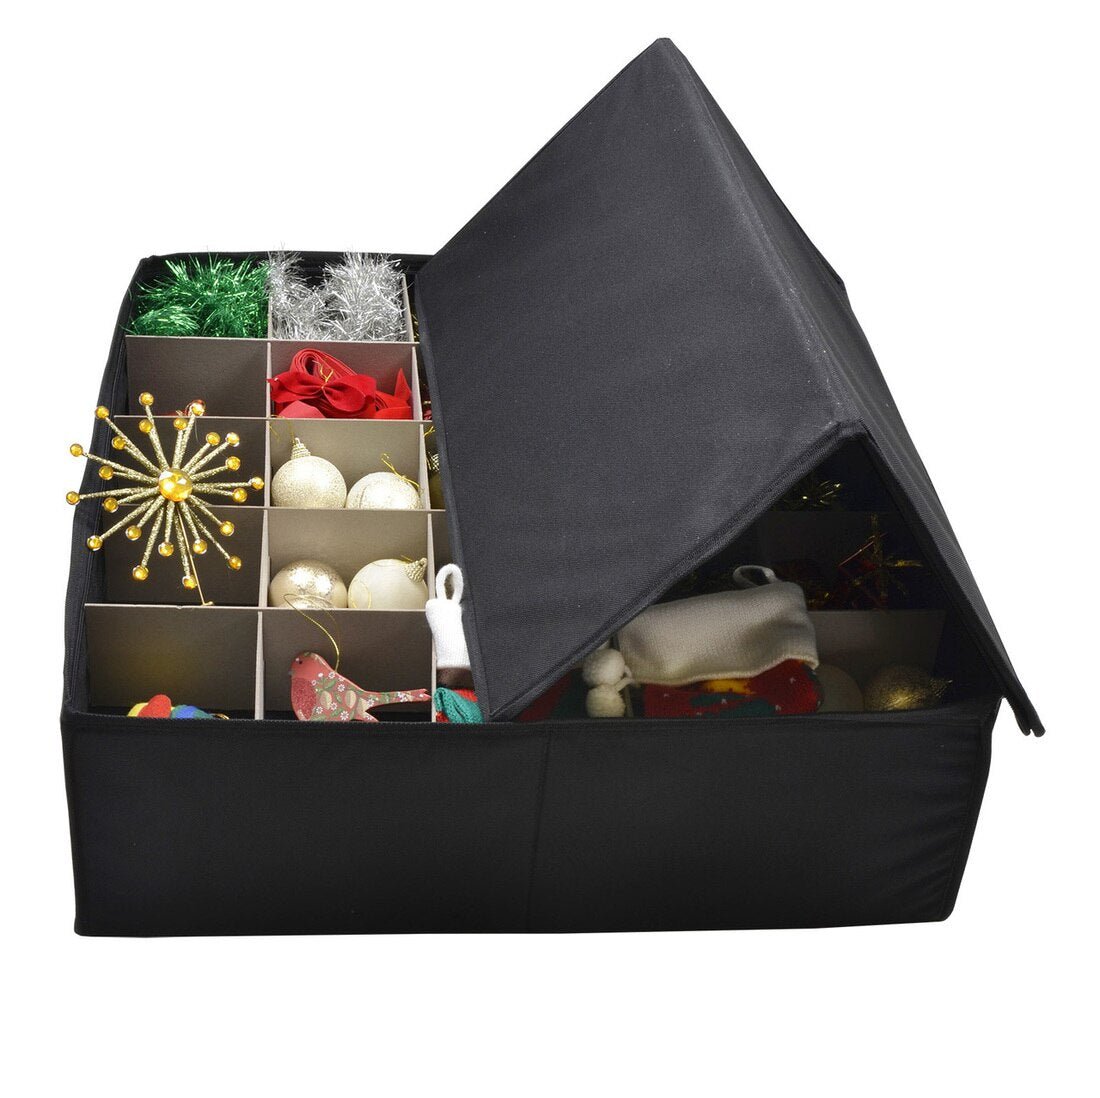 Mr Crimbo Christmas Tree 60cm Bauble Decoration Storage Box Bag - MrCrimbo.co.uk -XS4869 - -bauble bag